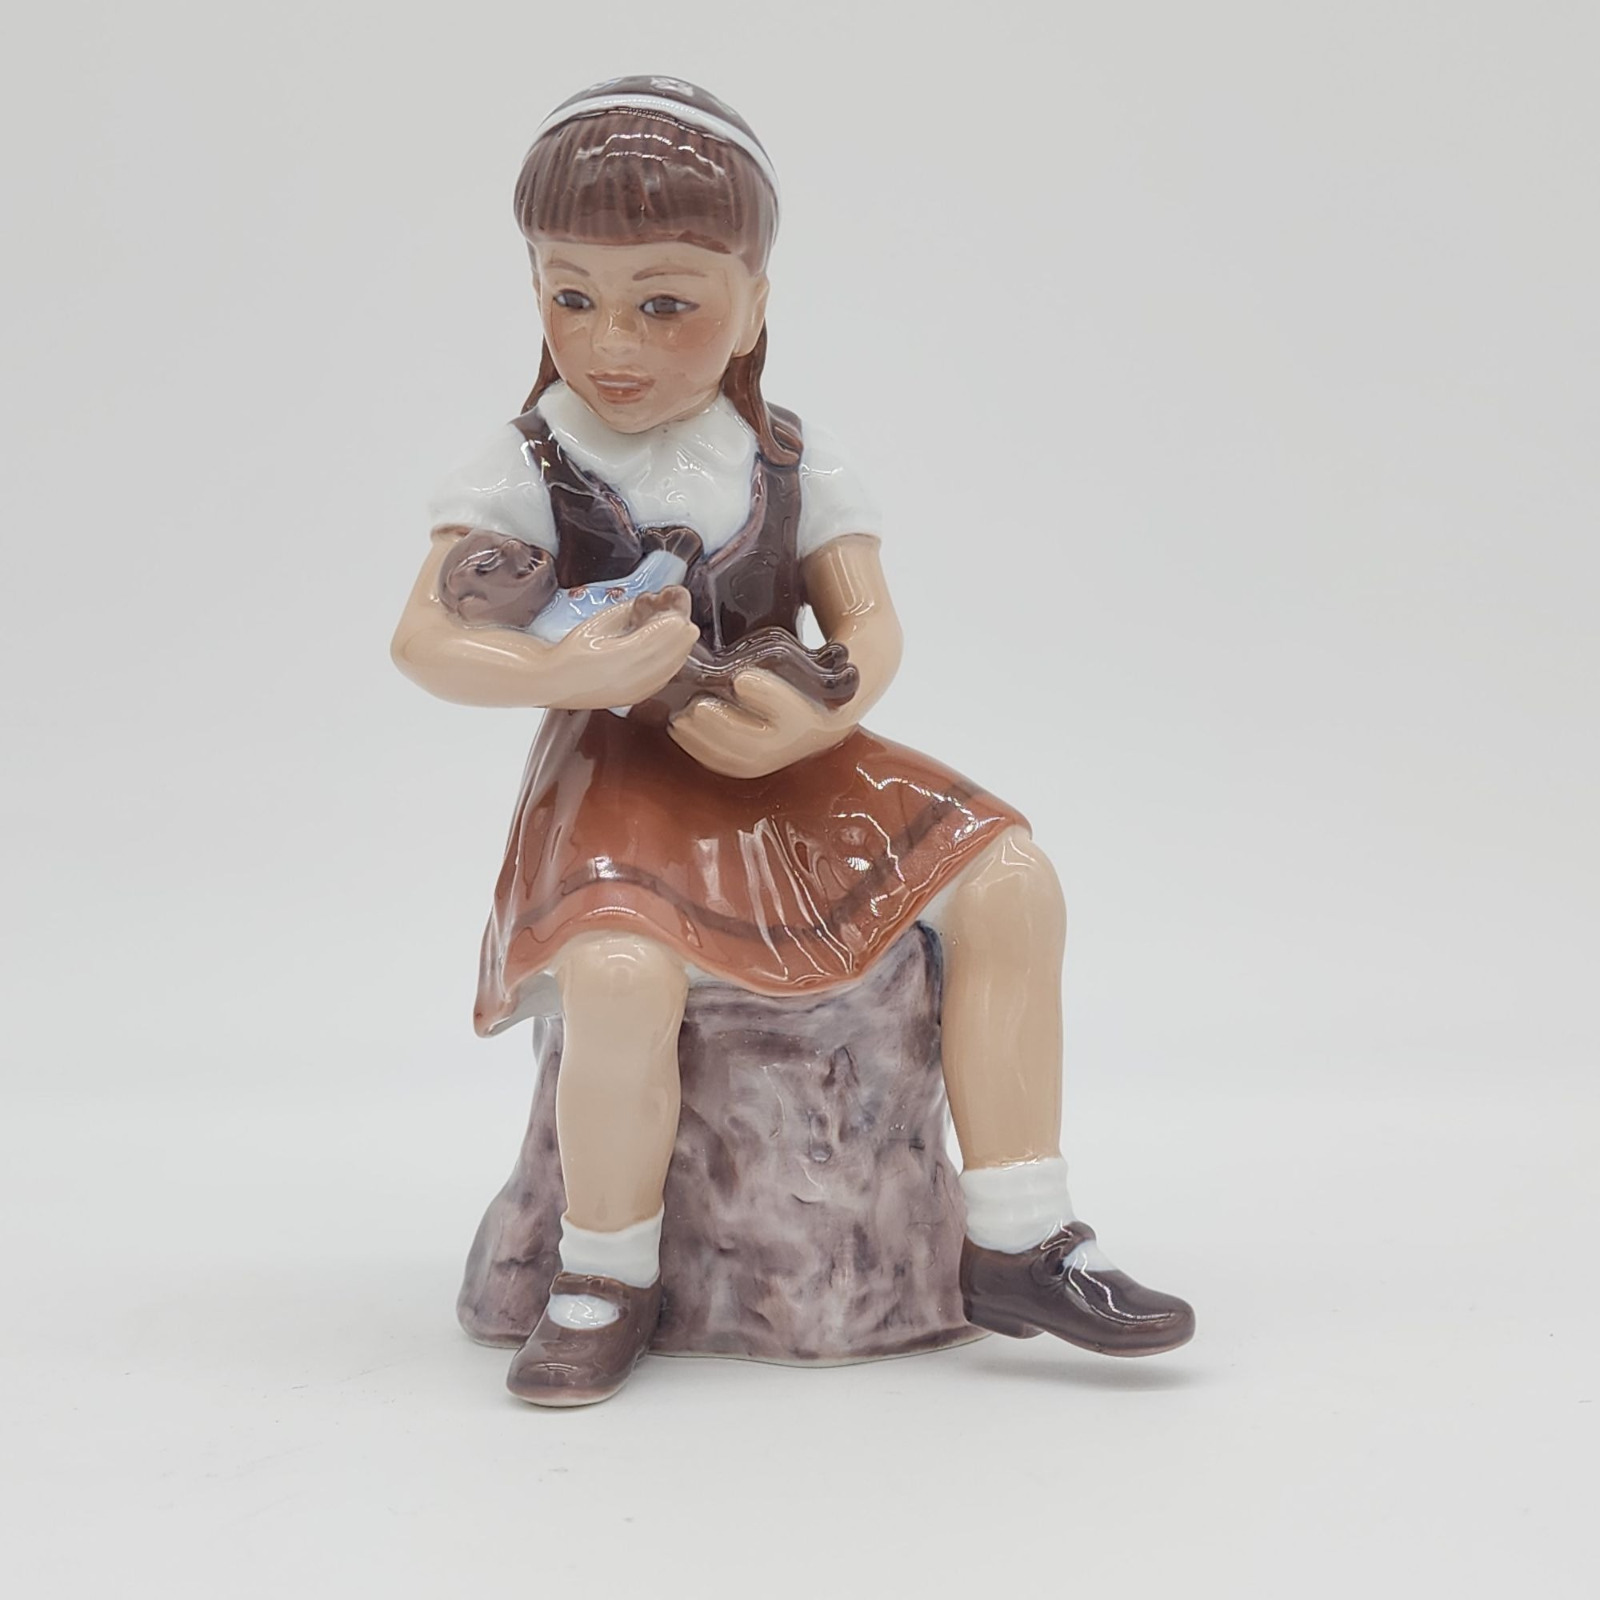 Dahl Jensen Figurine #1295 Girl Holding Teddy Bear Copenhagen Denmark VTG